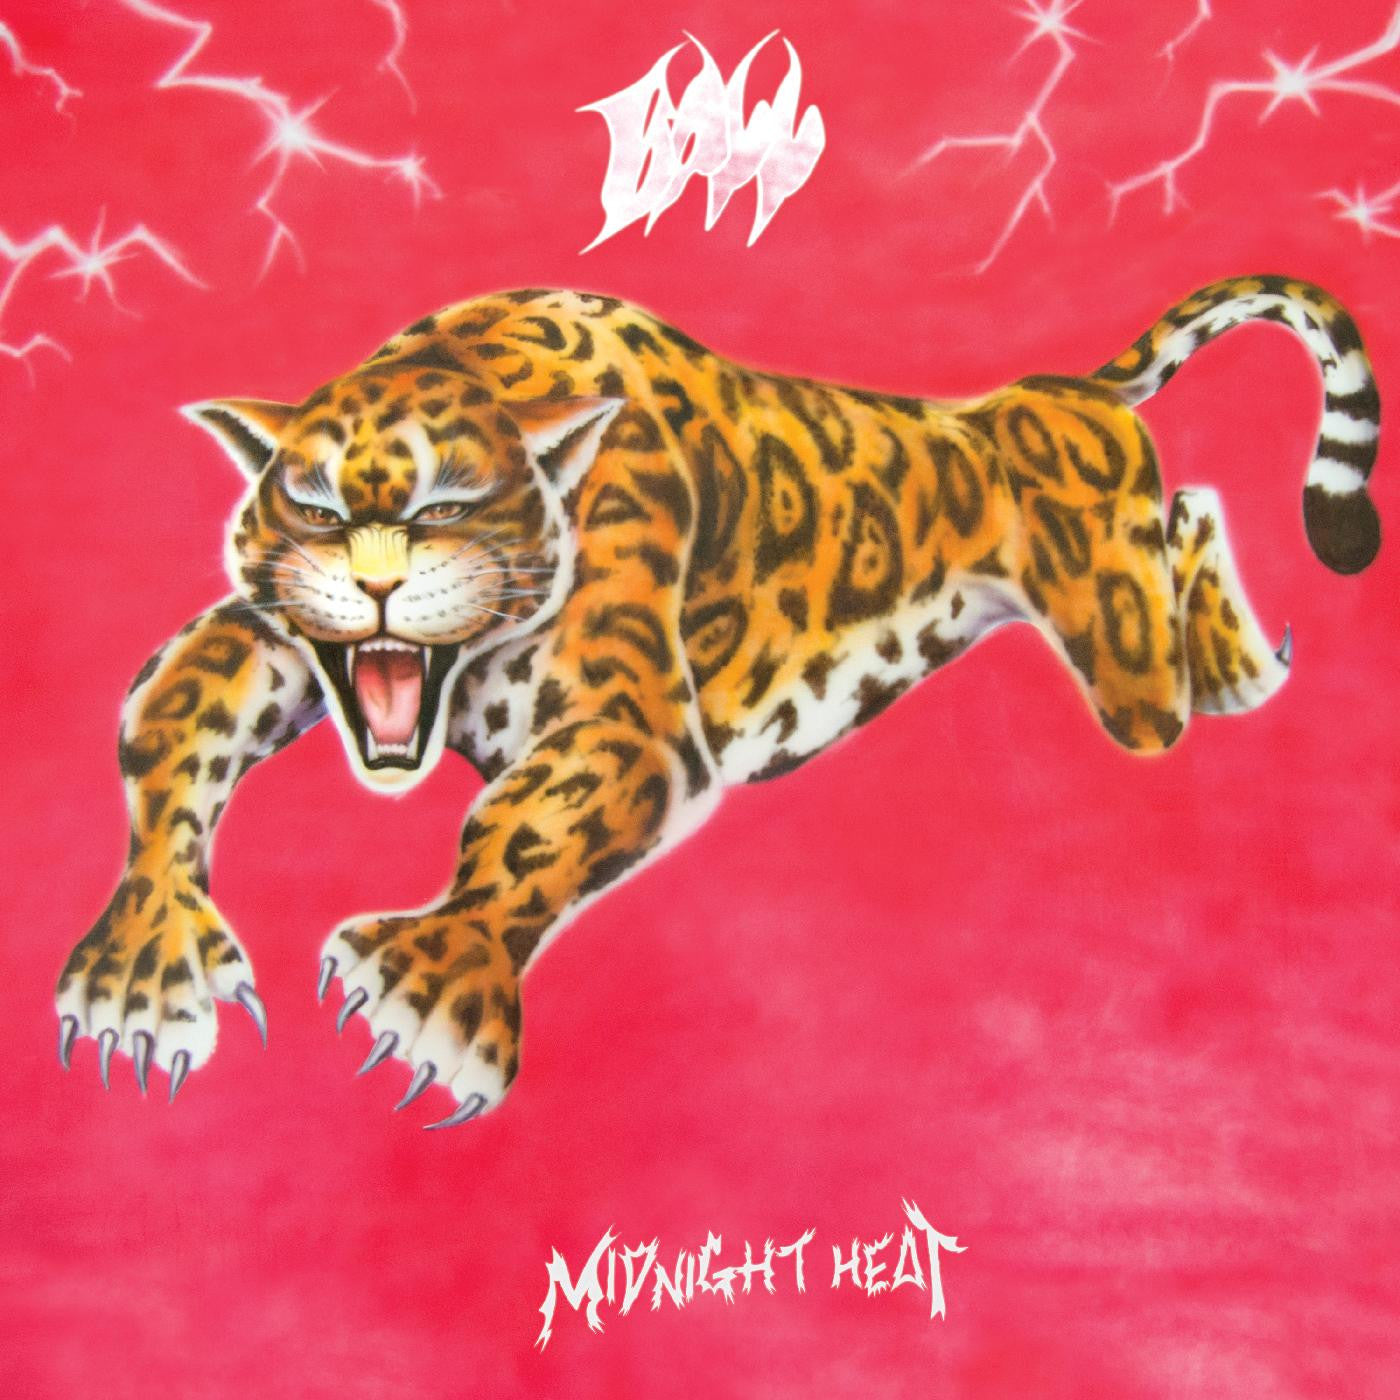 Ball - Midnight Heat (Vinyl LP)